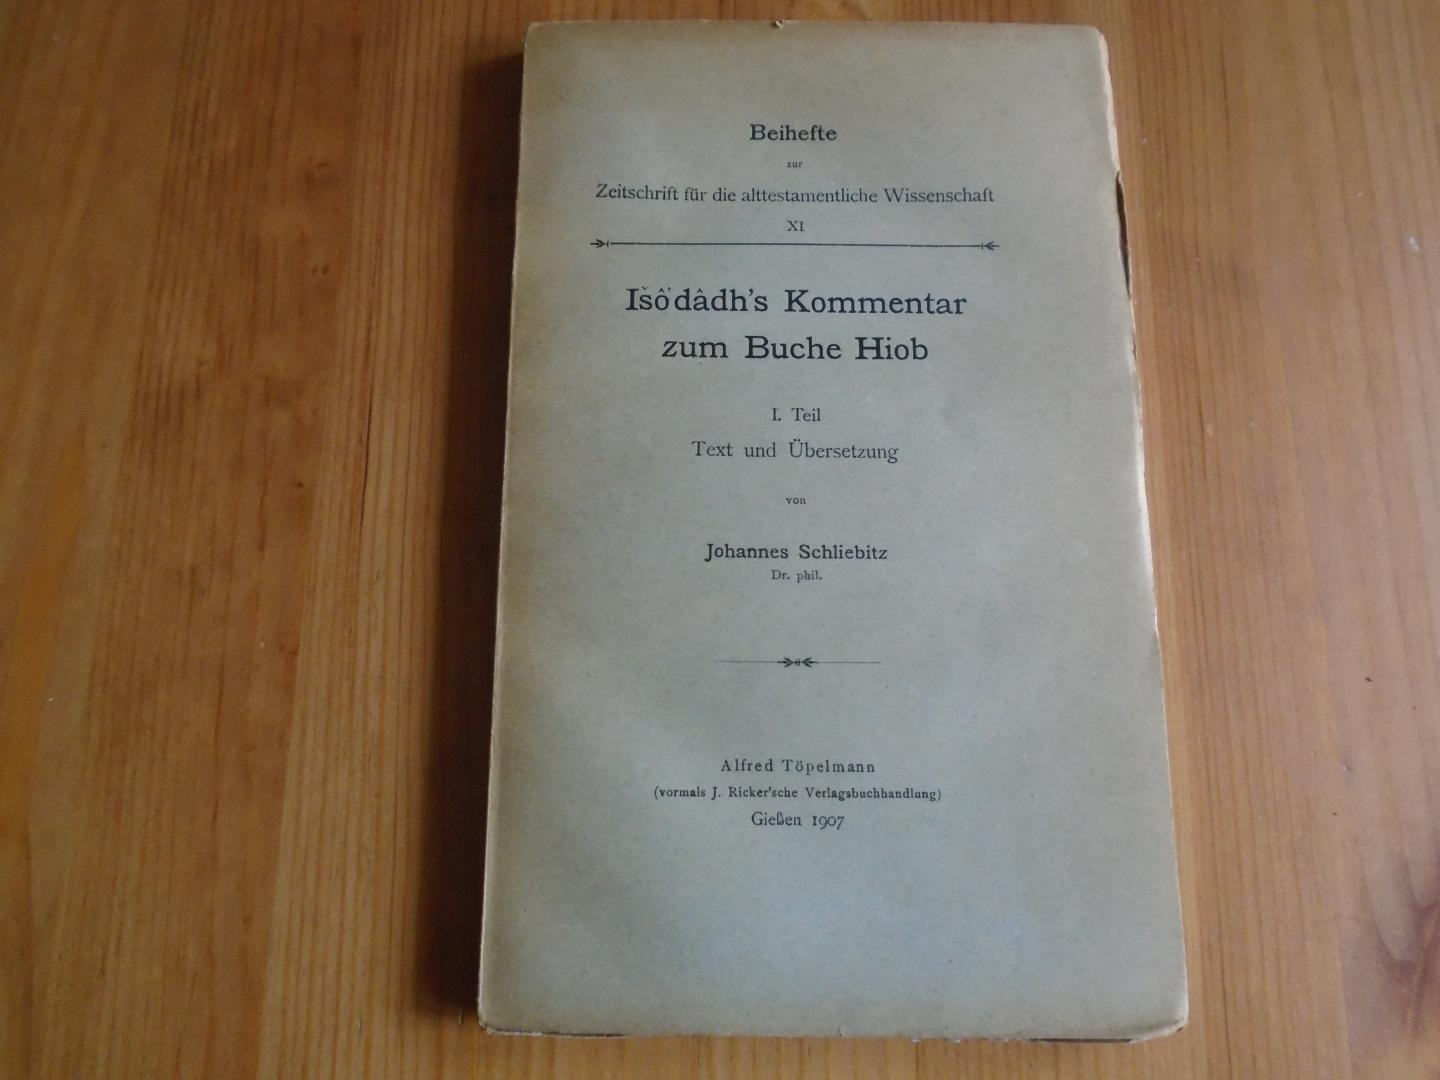 Schliebitz, Johannes - Isô'dâdh's Kommentar zum Buche Hiob, I. Teil: Text und Übersetzung